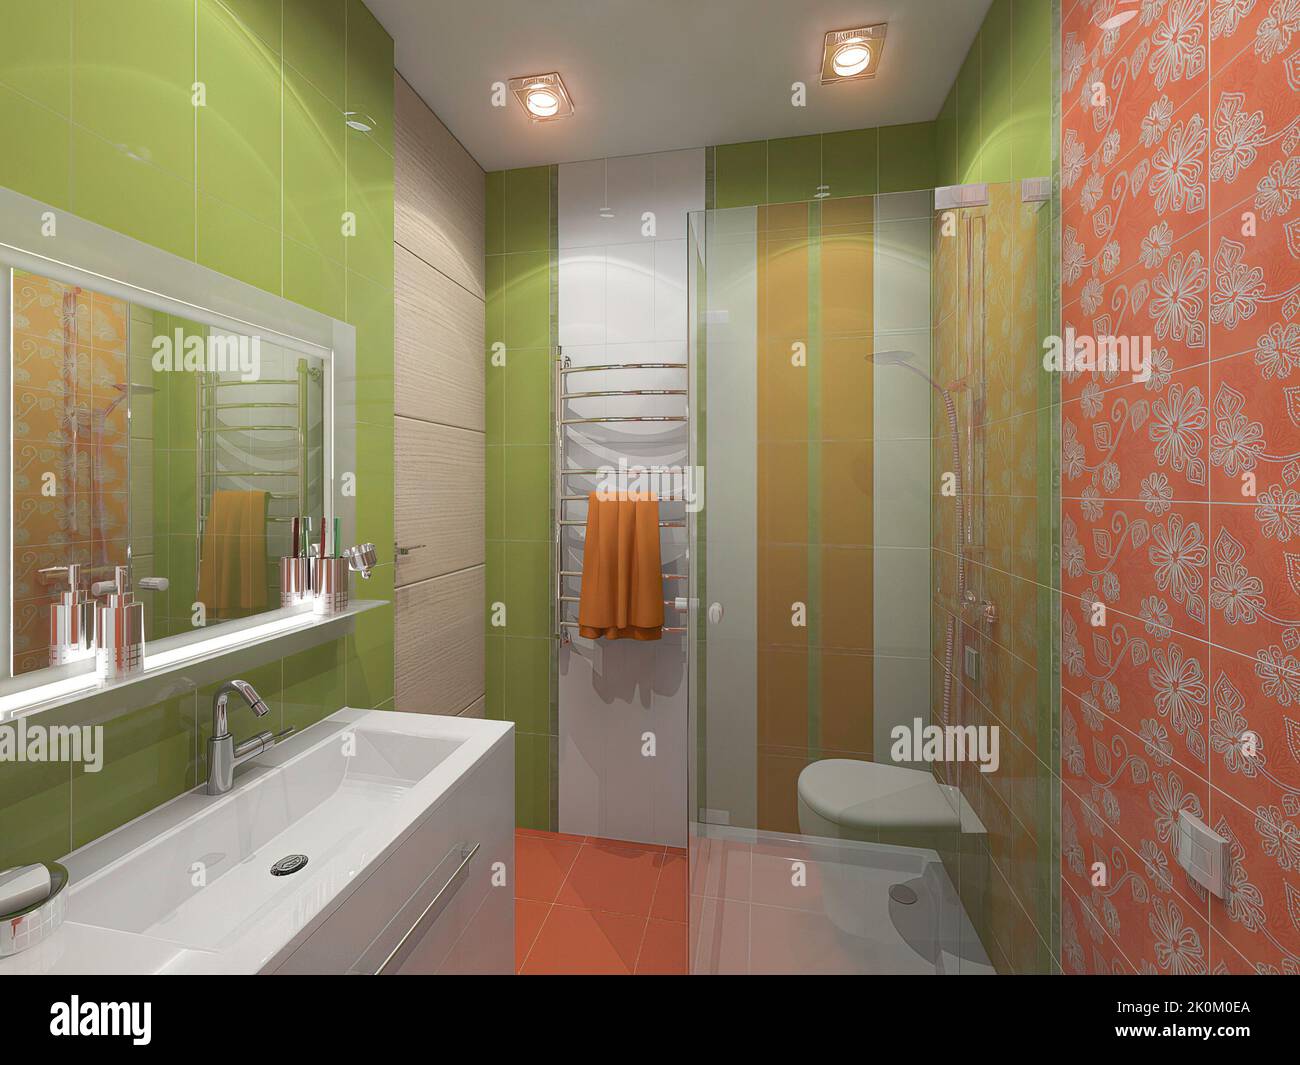 3d rendu d'une salle de bain dans les couleurs vert vif et orange. 3d illustration d'une petite salle de douche. Banque D'Images